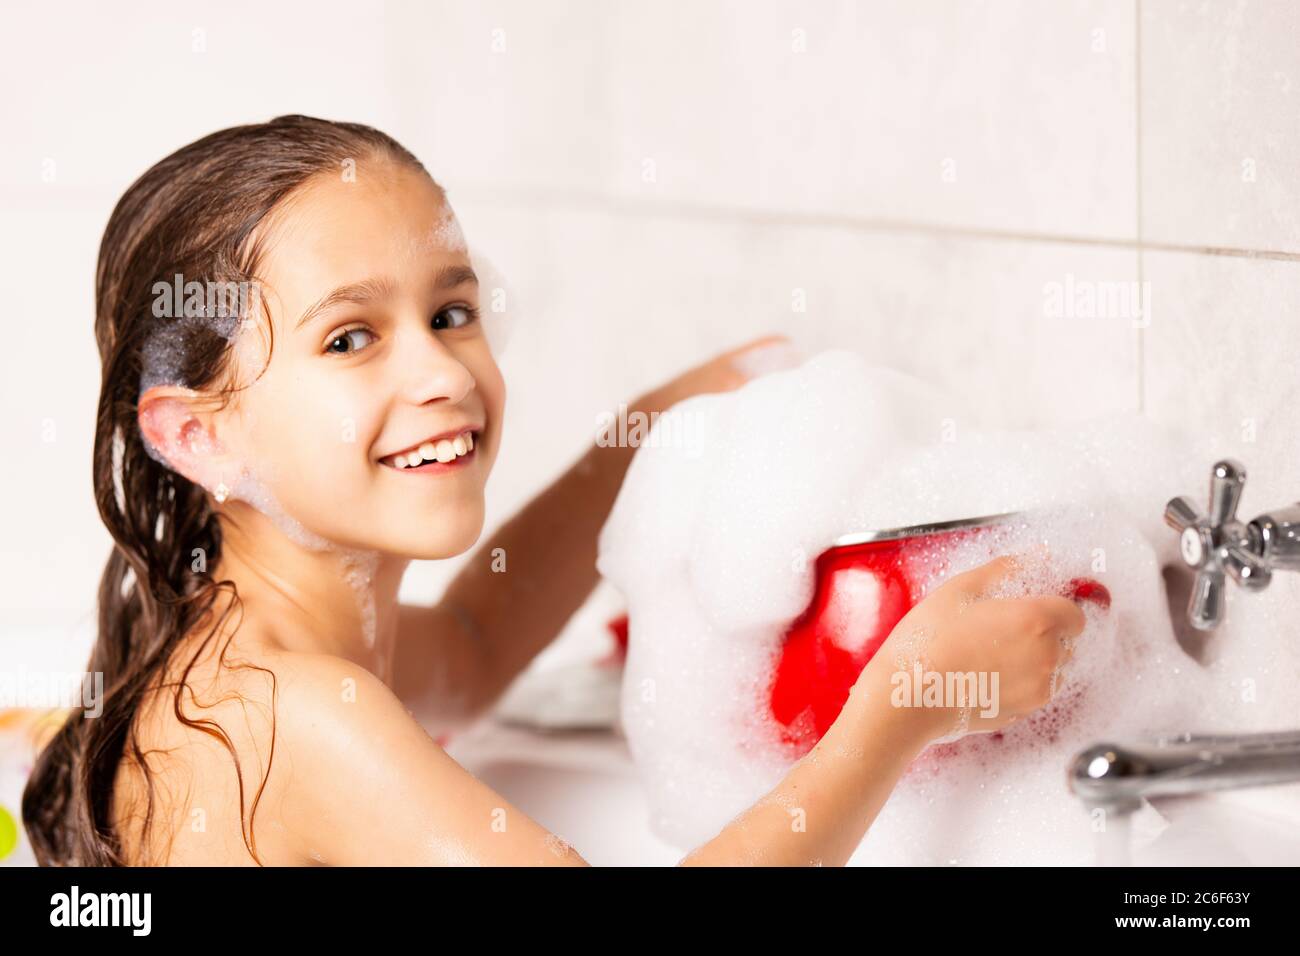 Young lass having fun in the bath